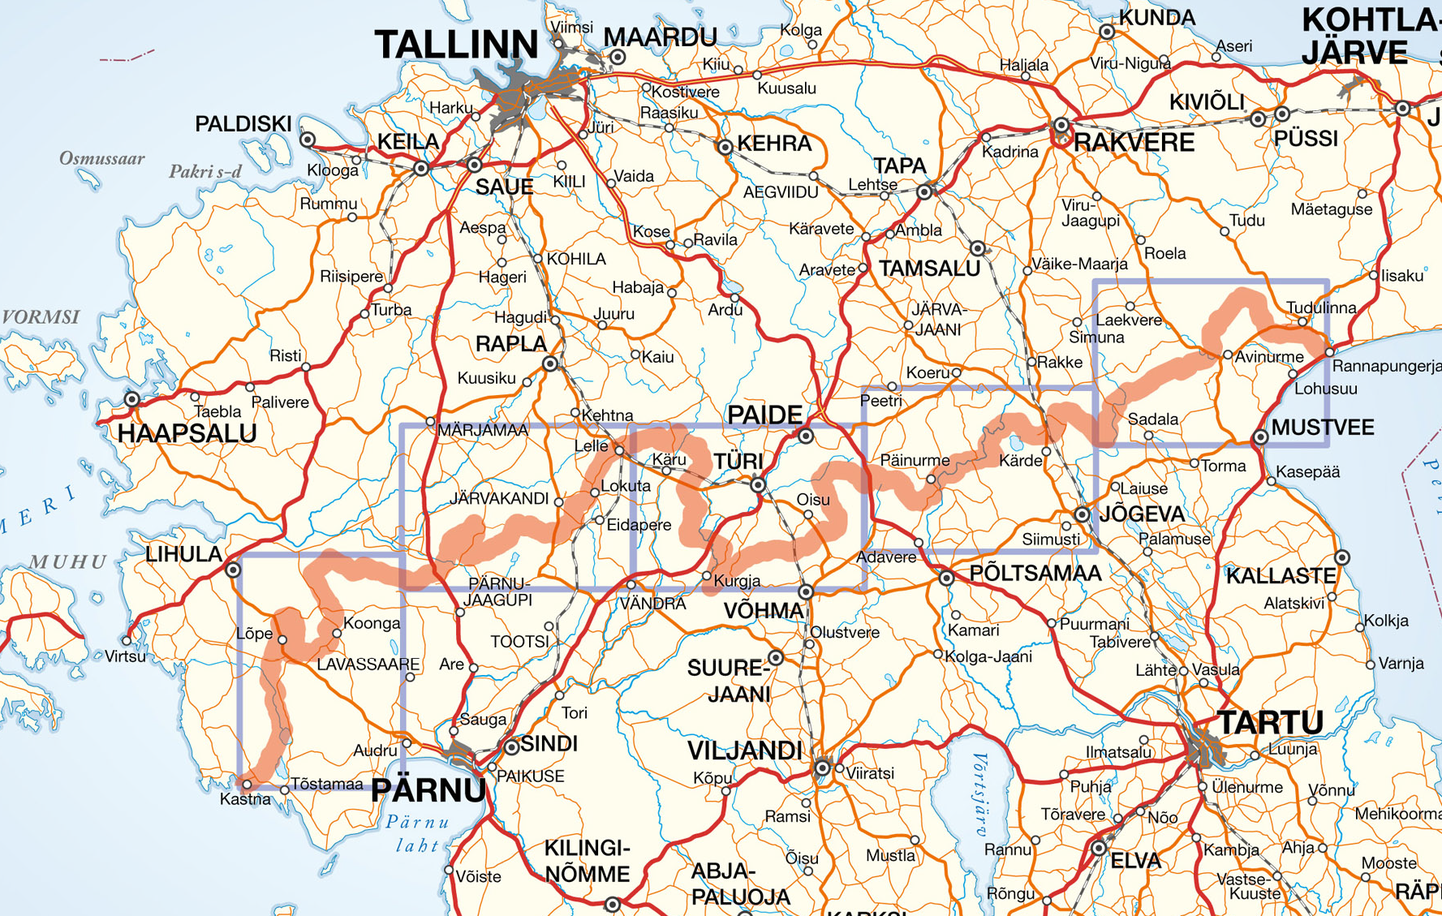 Ajalooline piir Eesti- ja Liivimaa vahel